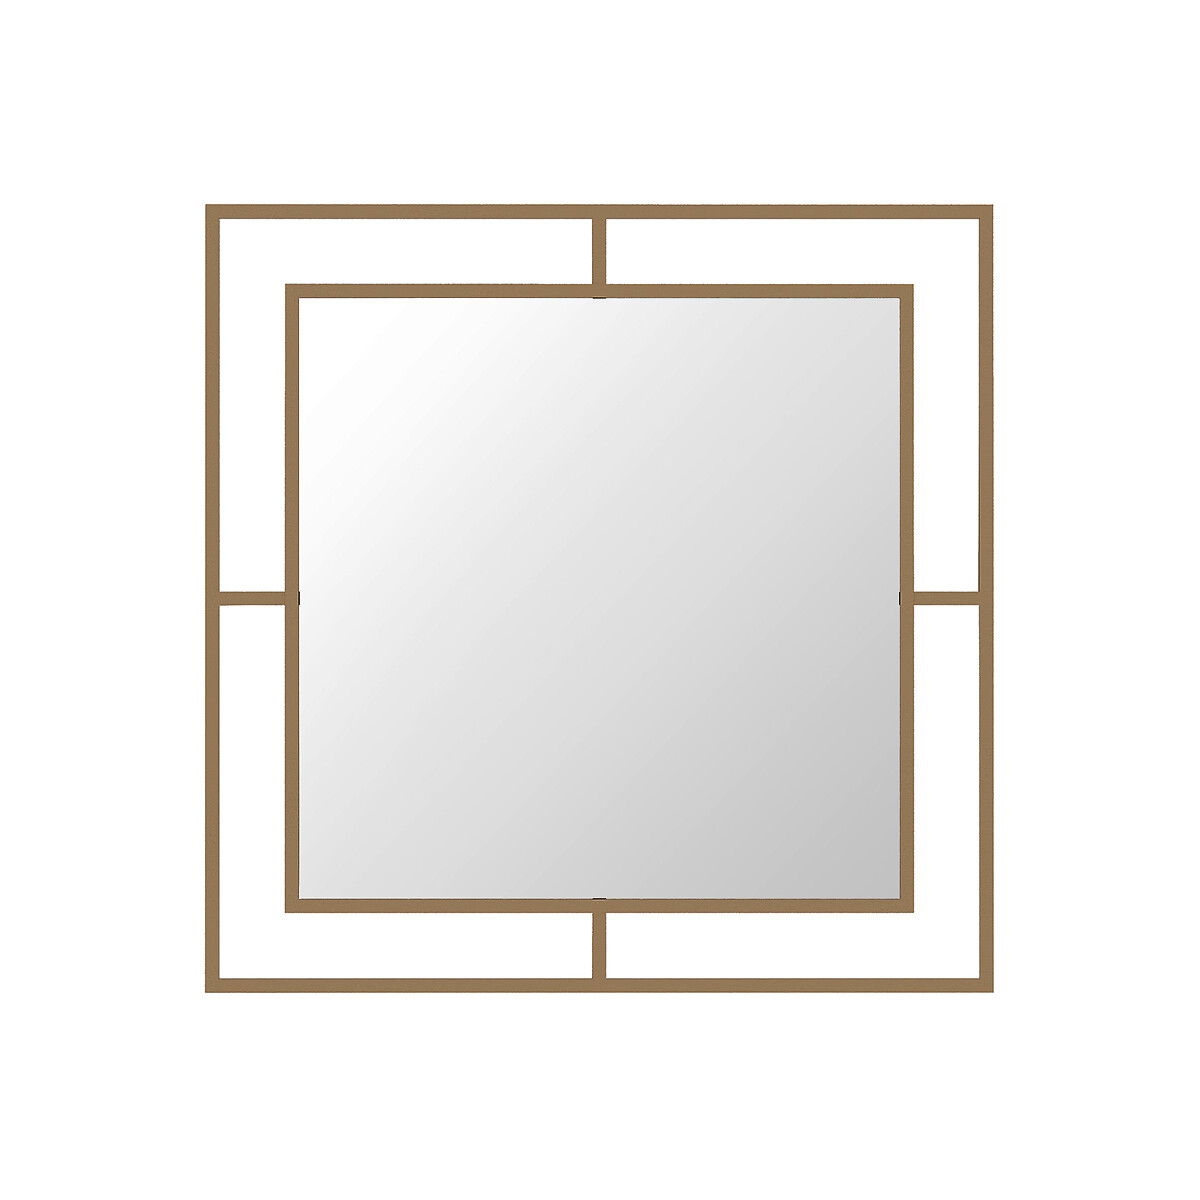 Настенное зеркало CORNER MIRROR единый размер золотистый зеркало подсолнечник 825 см tylar единый размер золотистый